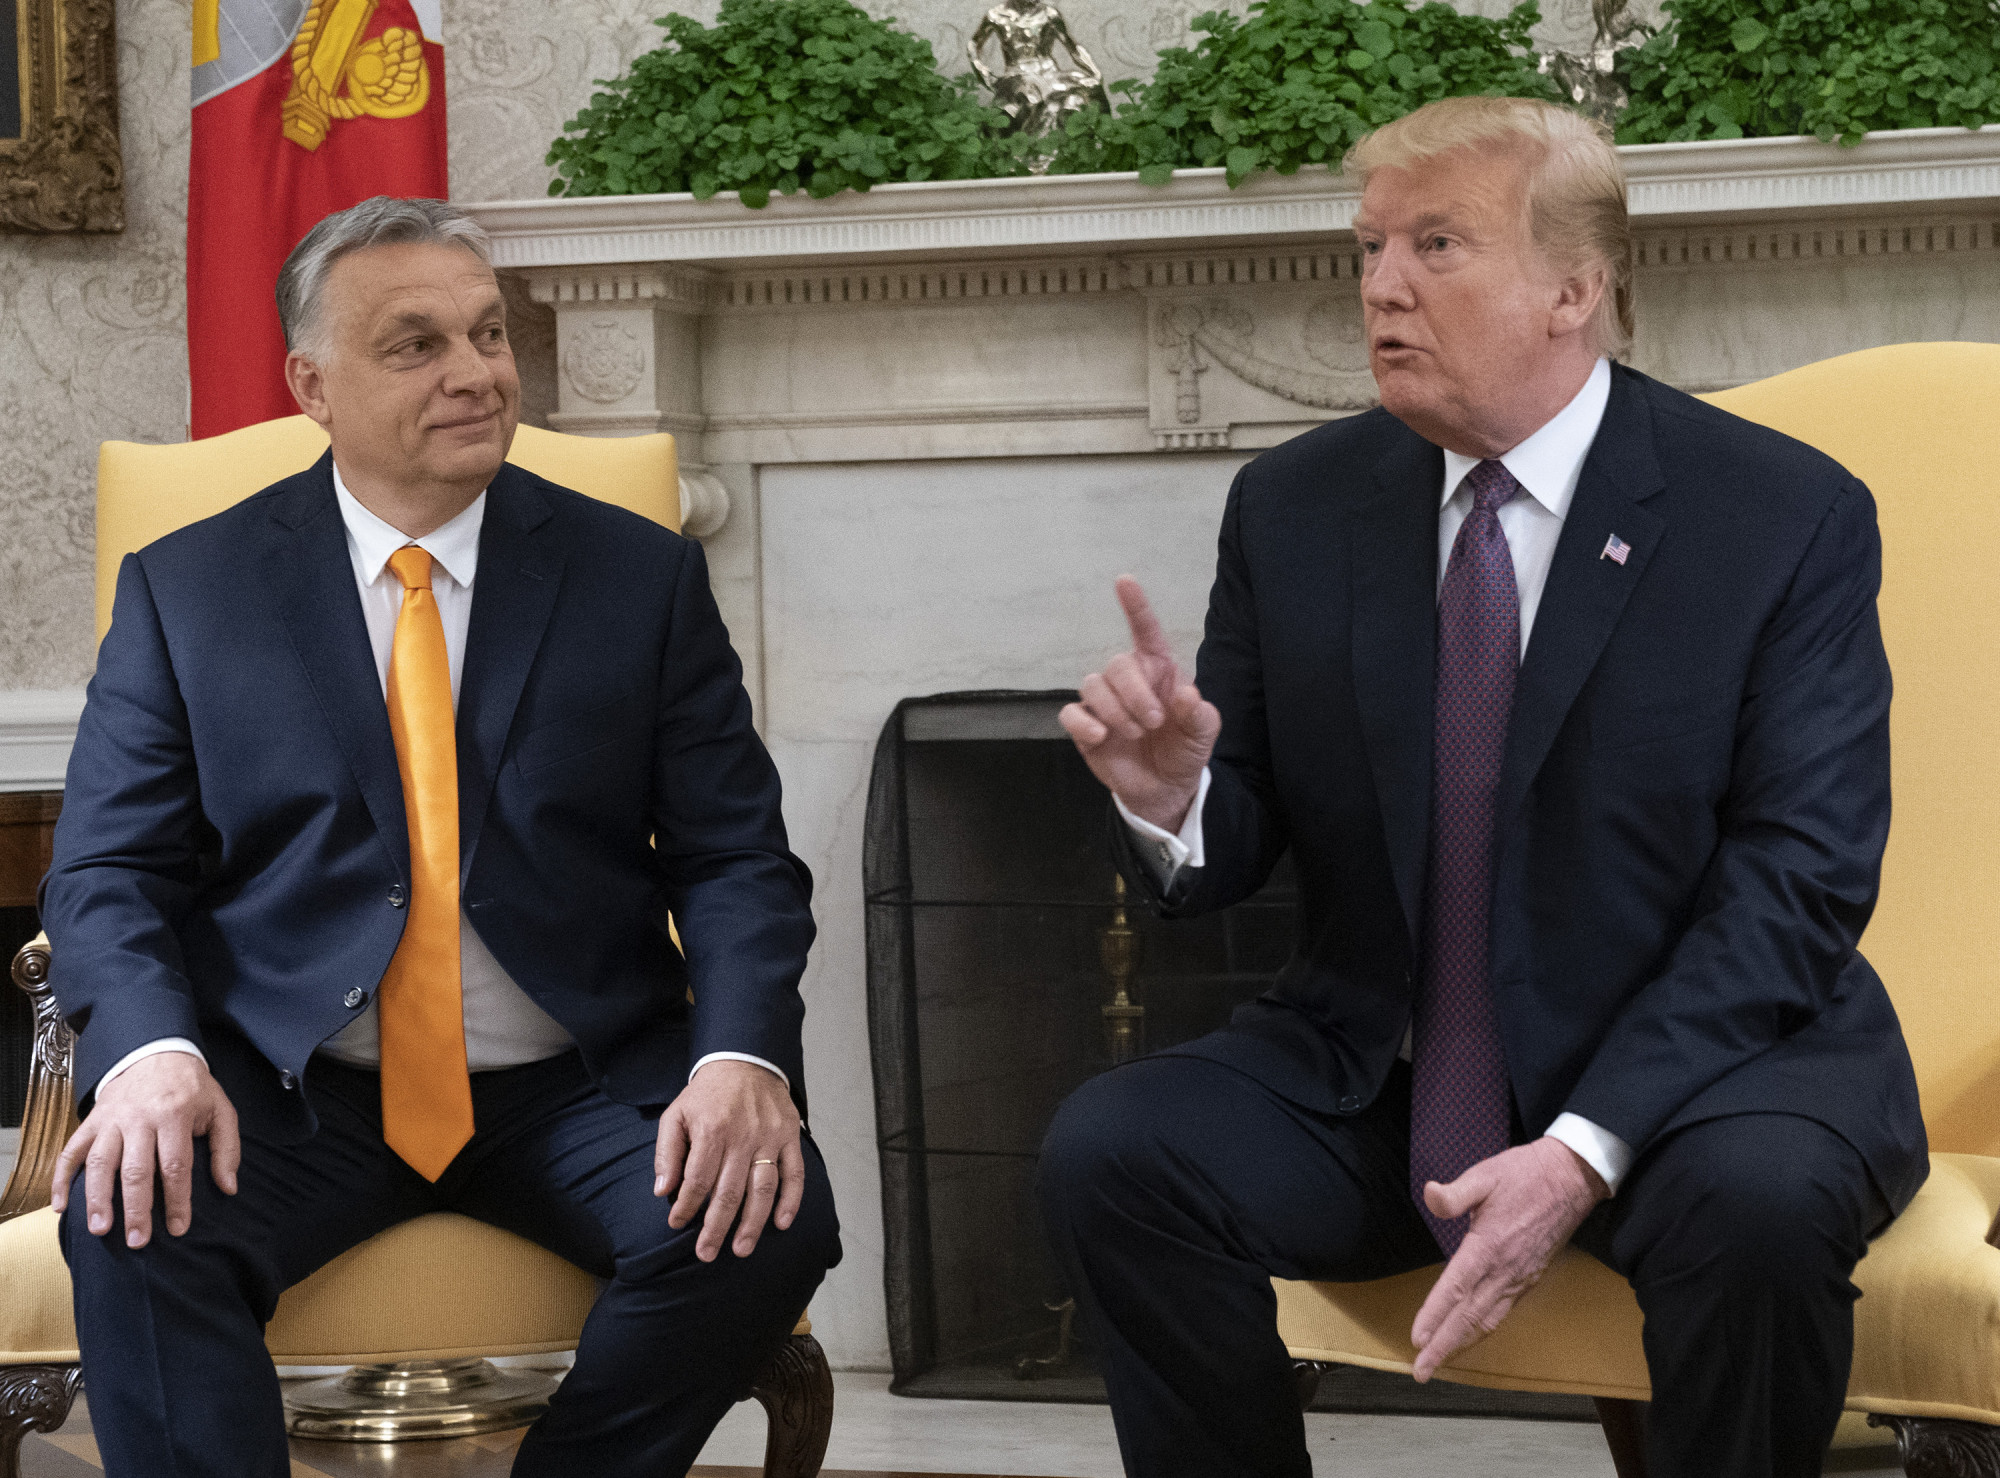 Az amerikai nagykövetnek Szijjártó-idézettel kellett emlékeztetnie Orbánt, hogy a magyar kormány nem avatkozik mások belügyeibe